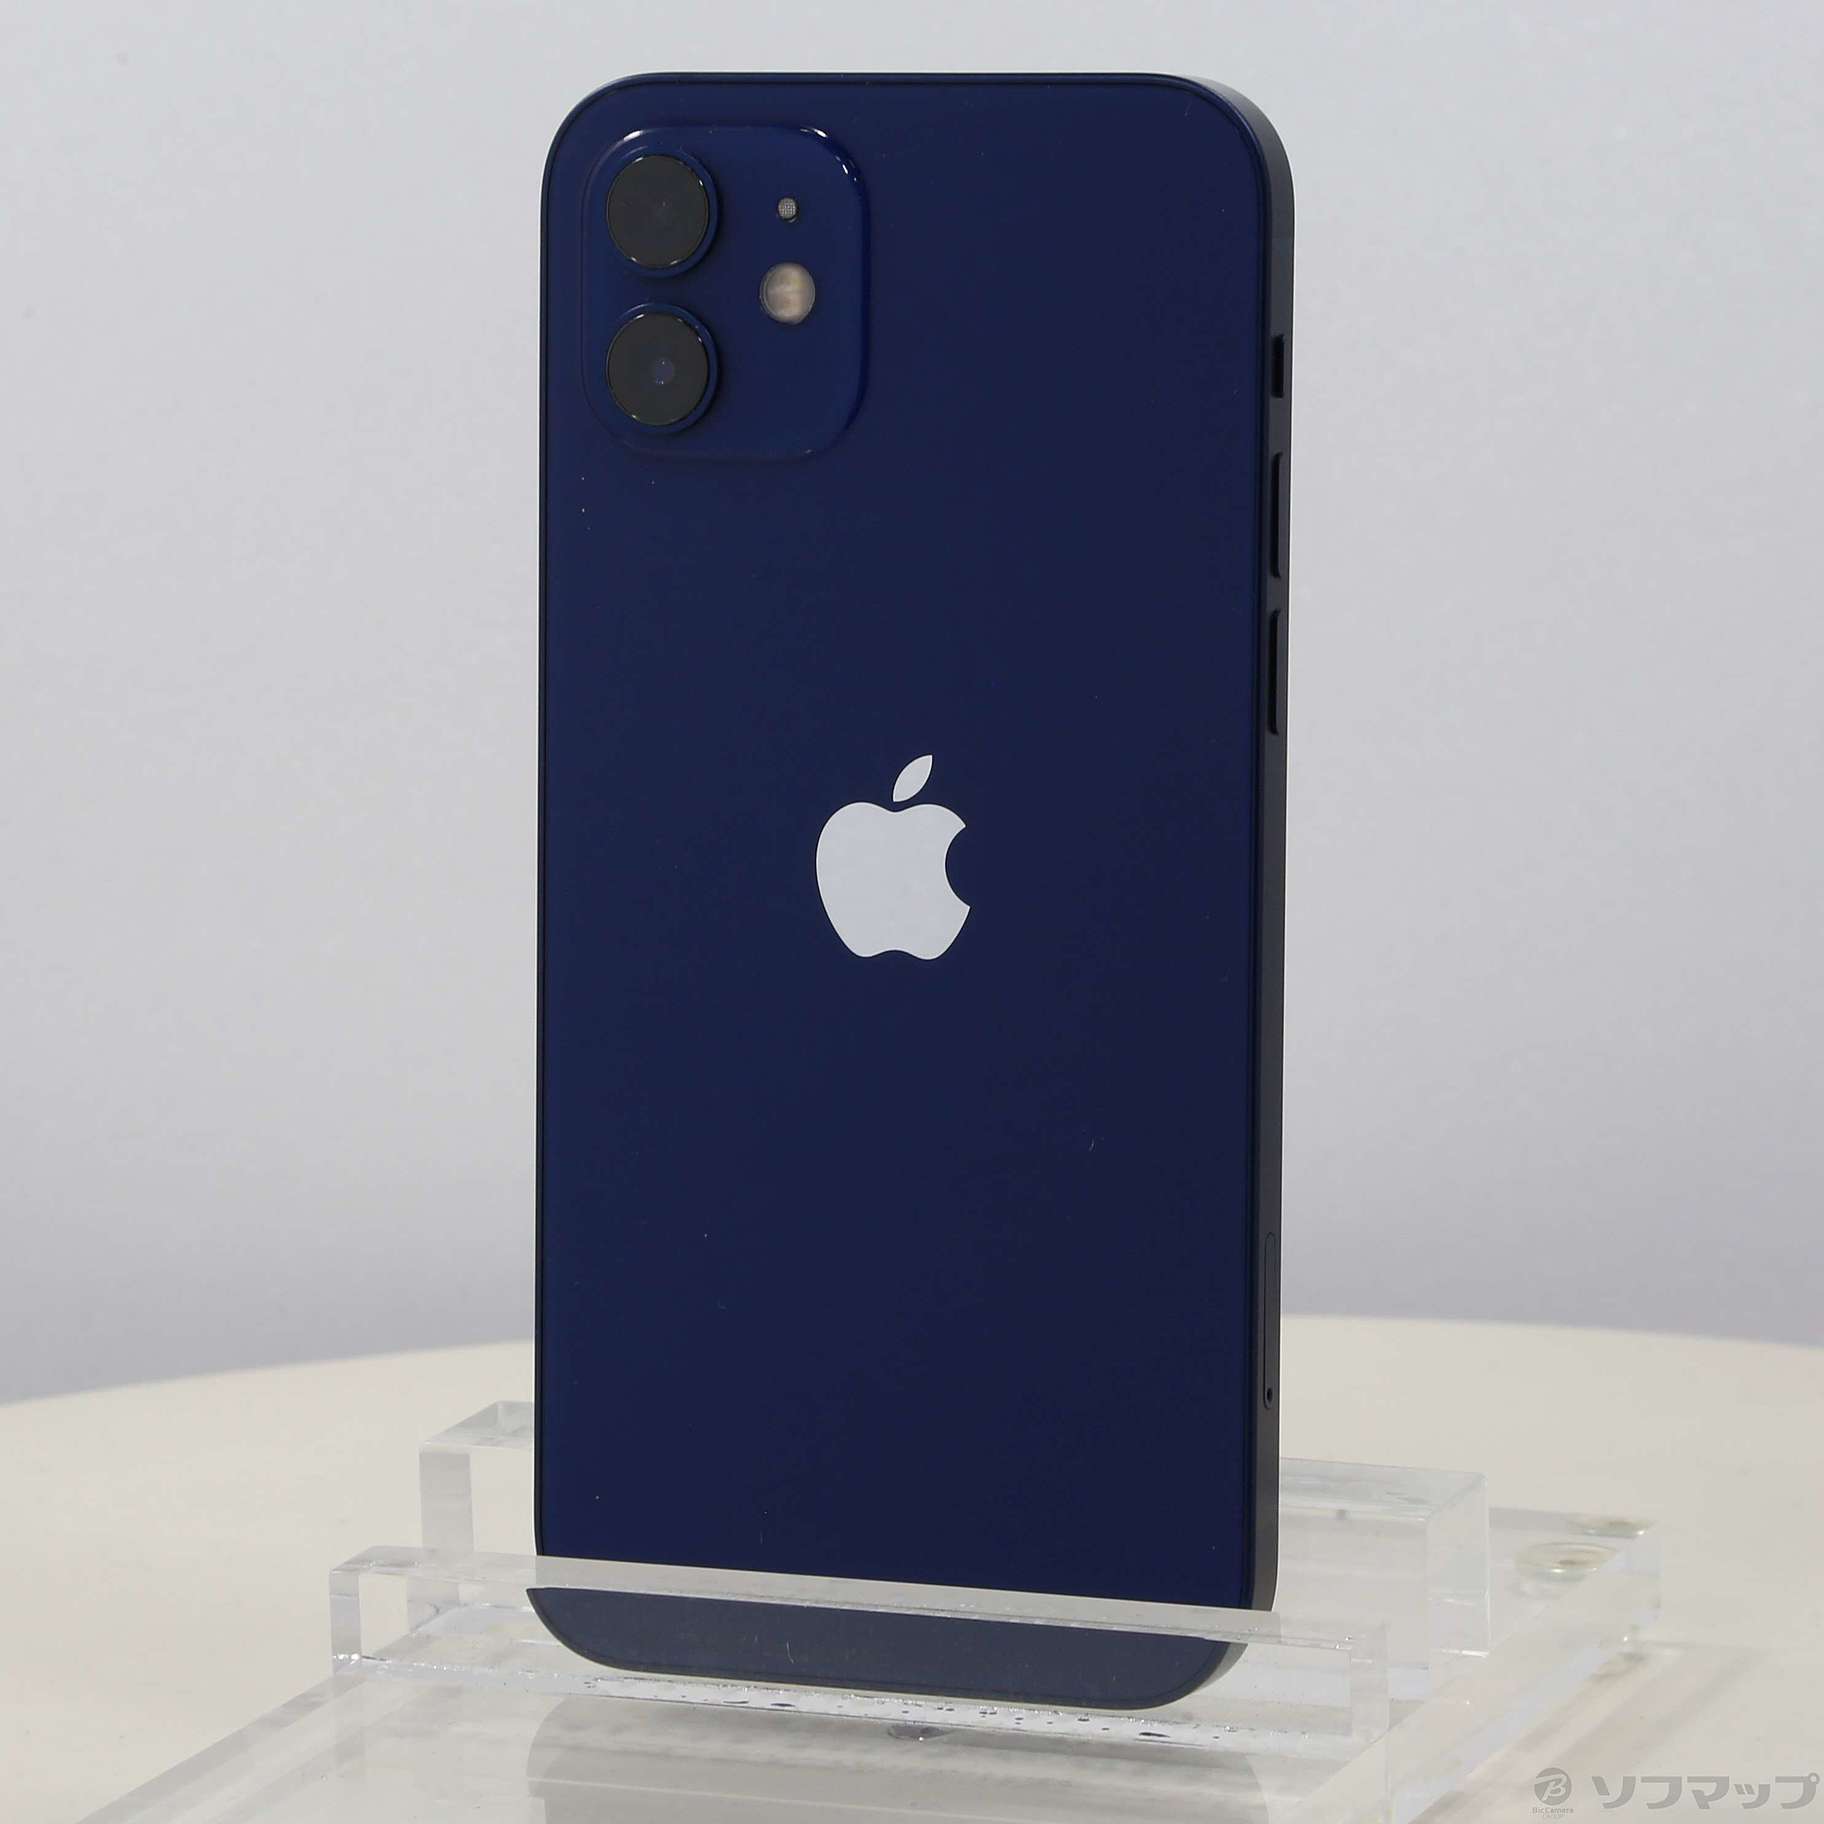 ????【SS】iPhone12, 128GB, Blue, Simフリー????